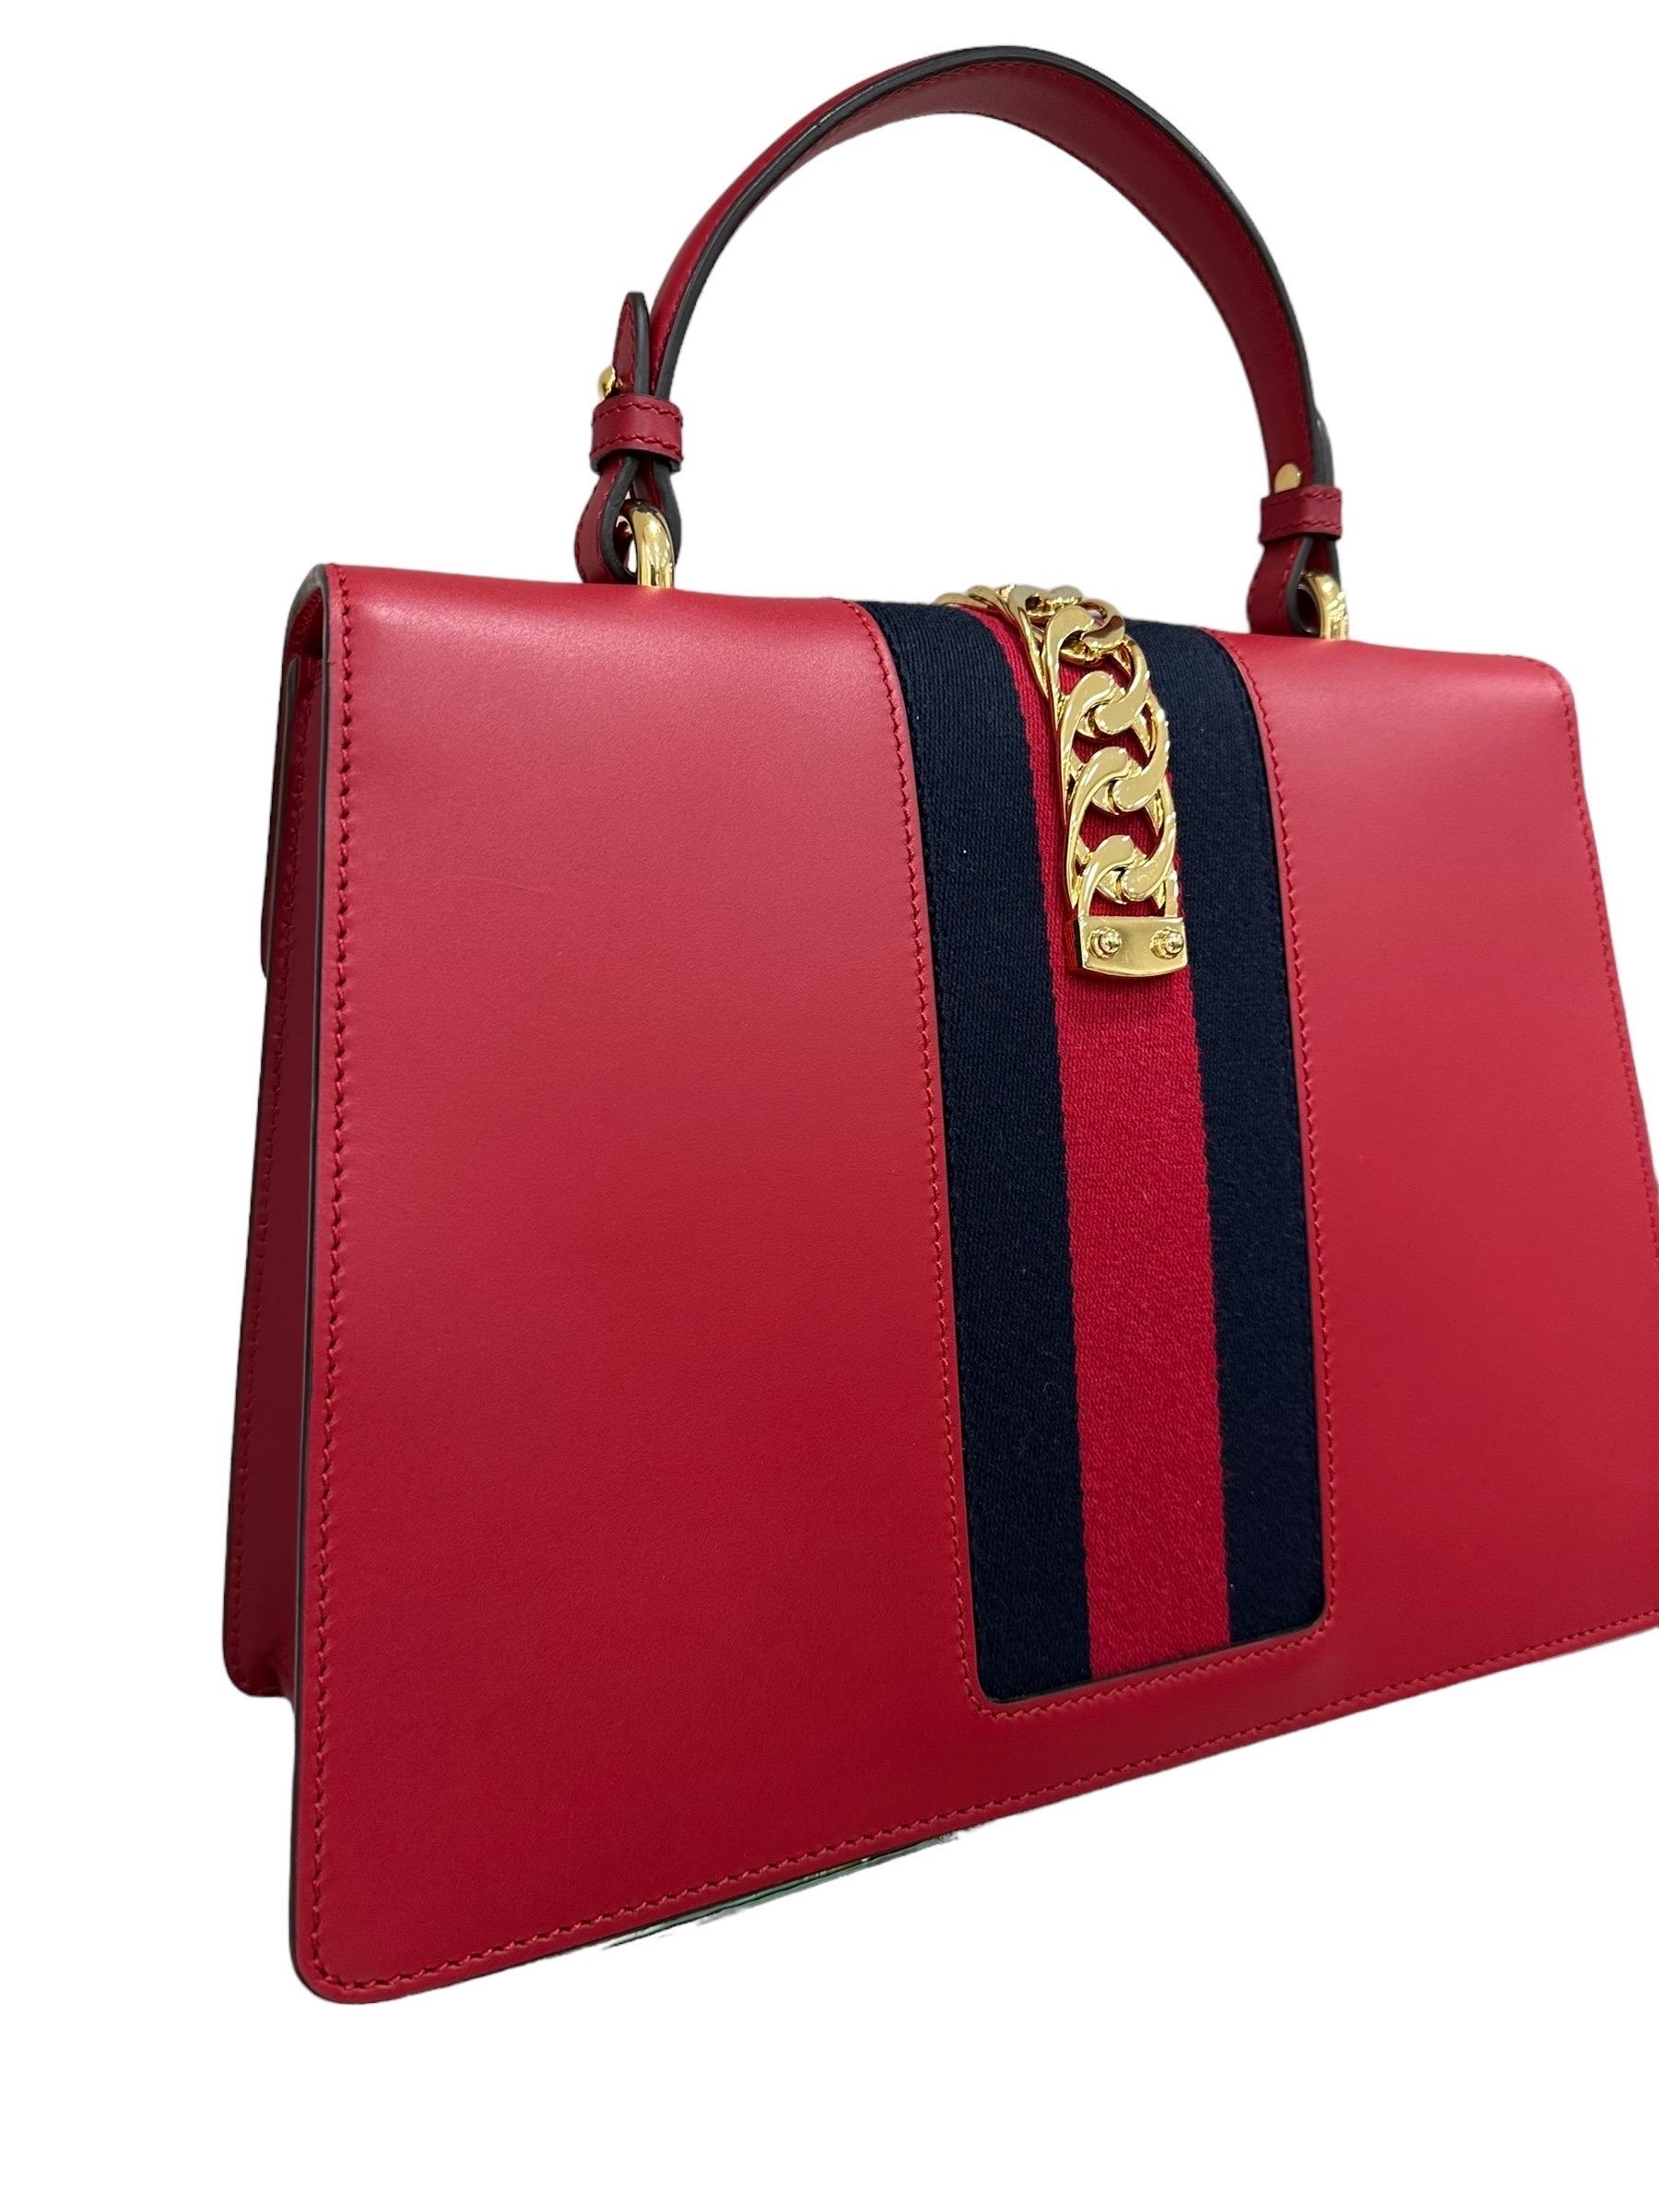 Gucci Sylvie Media Borsa a Tracolla pelle Rossa  For Sale 6